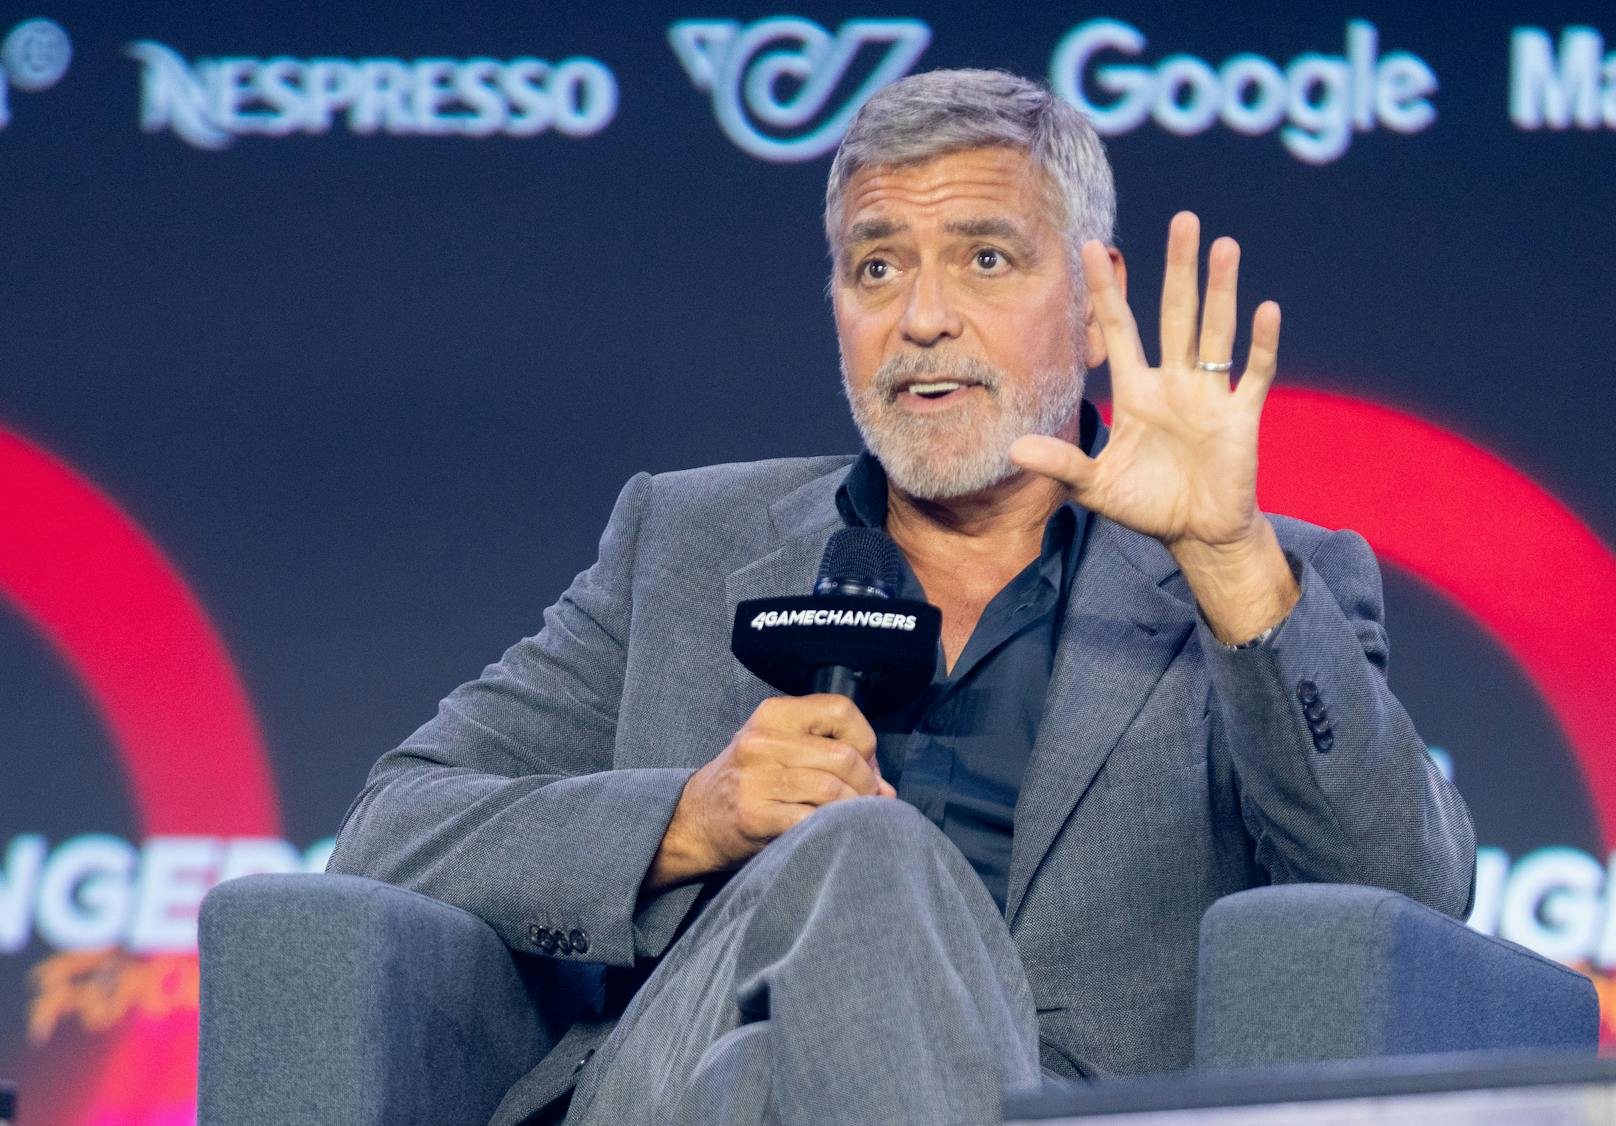 George Clooney (61) hat es nach zwei Jahren zum 4Gamechanger-Festival geschafft. Er sprach über&nbsp; seine Arbeit mit der George-Clooney-Foundation und sprach die Gräueltaten des russischen Militärs an.